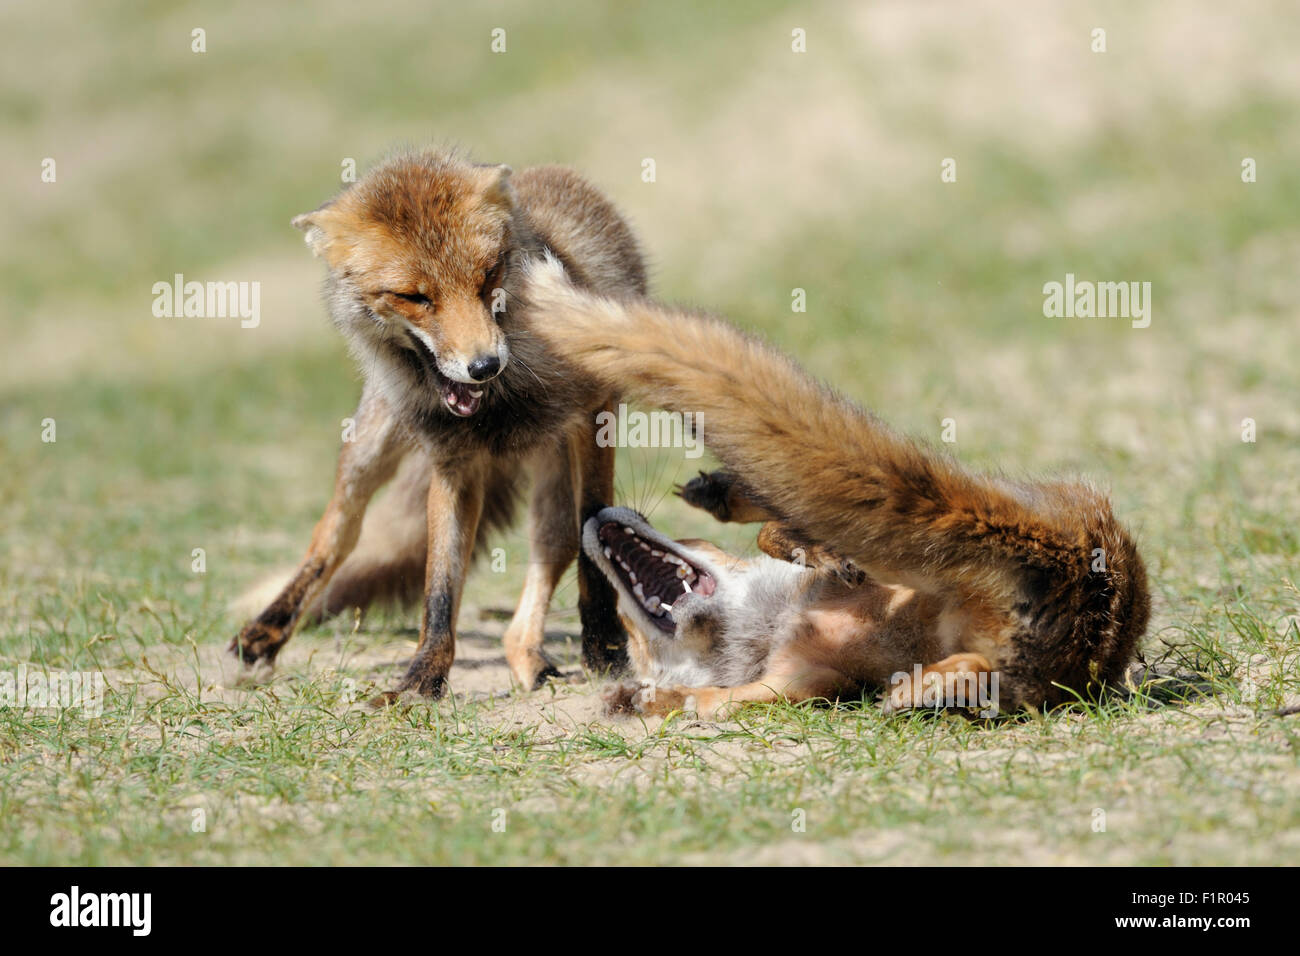 / Rotfuechse dos zorros (Vulpes vulpes ), rivales en una feroz lucha, lucha, persiguiendo el uno al otro. Foto de stock